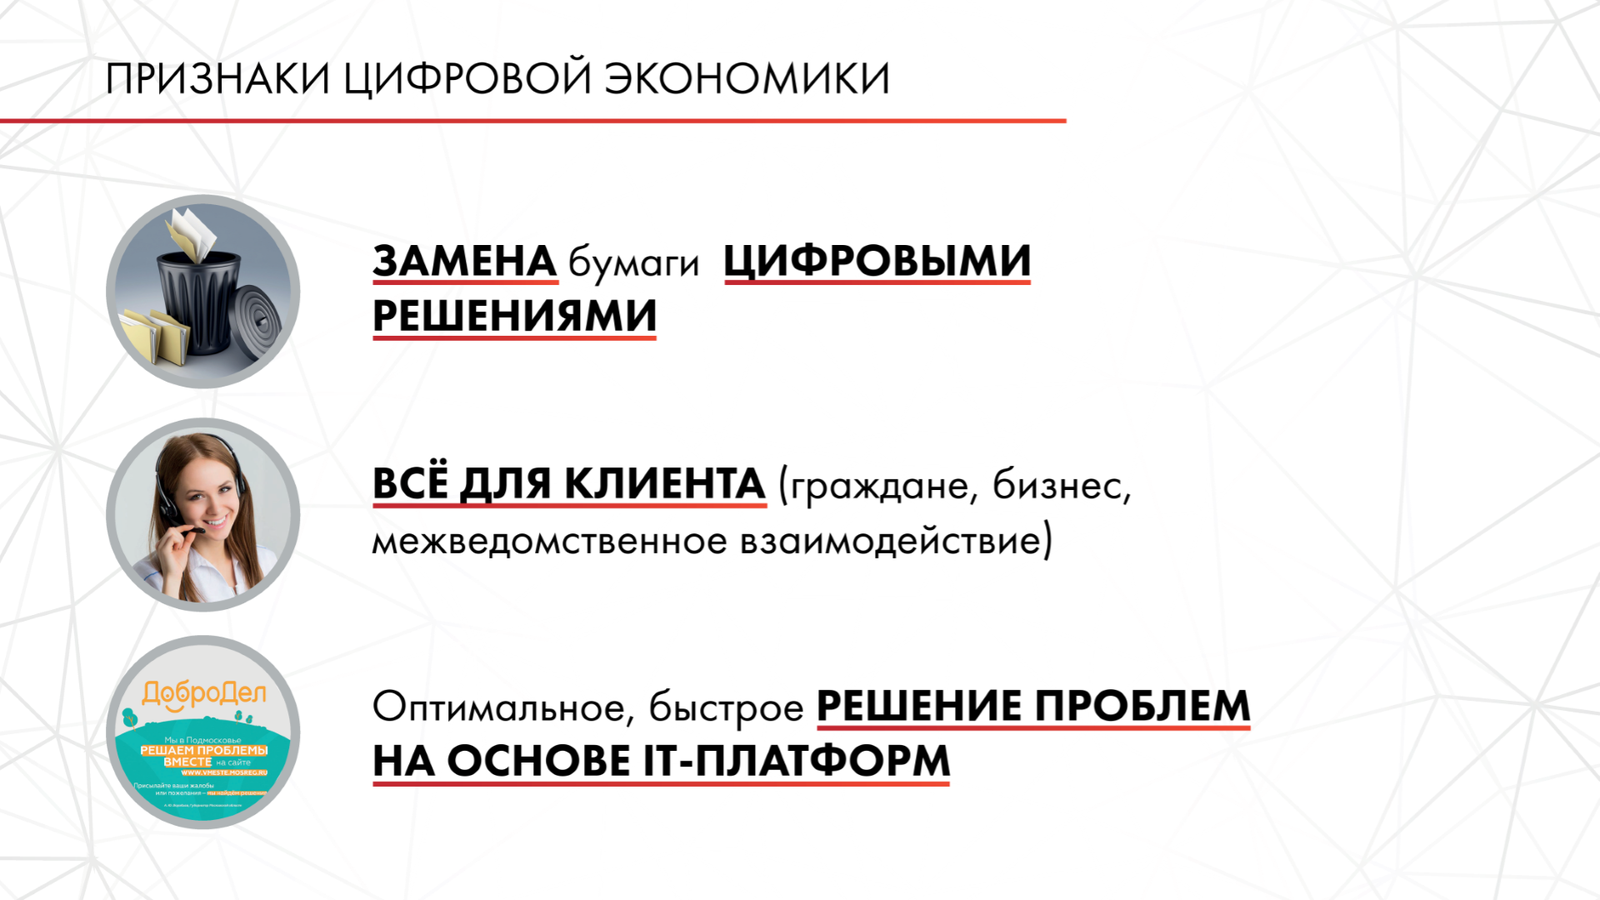 Андрей Воробьев губернатор московской области - Цифровизация — экономия денег и истребление коррупции